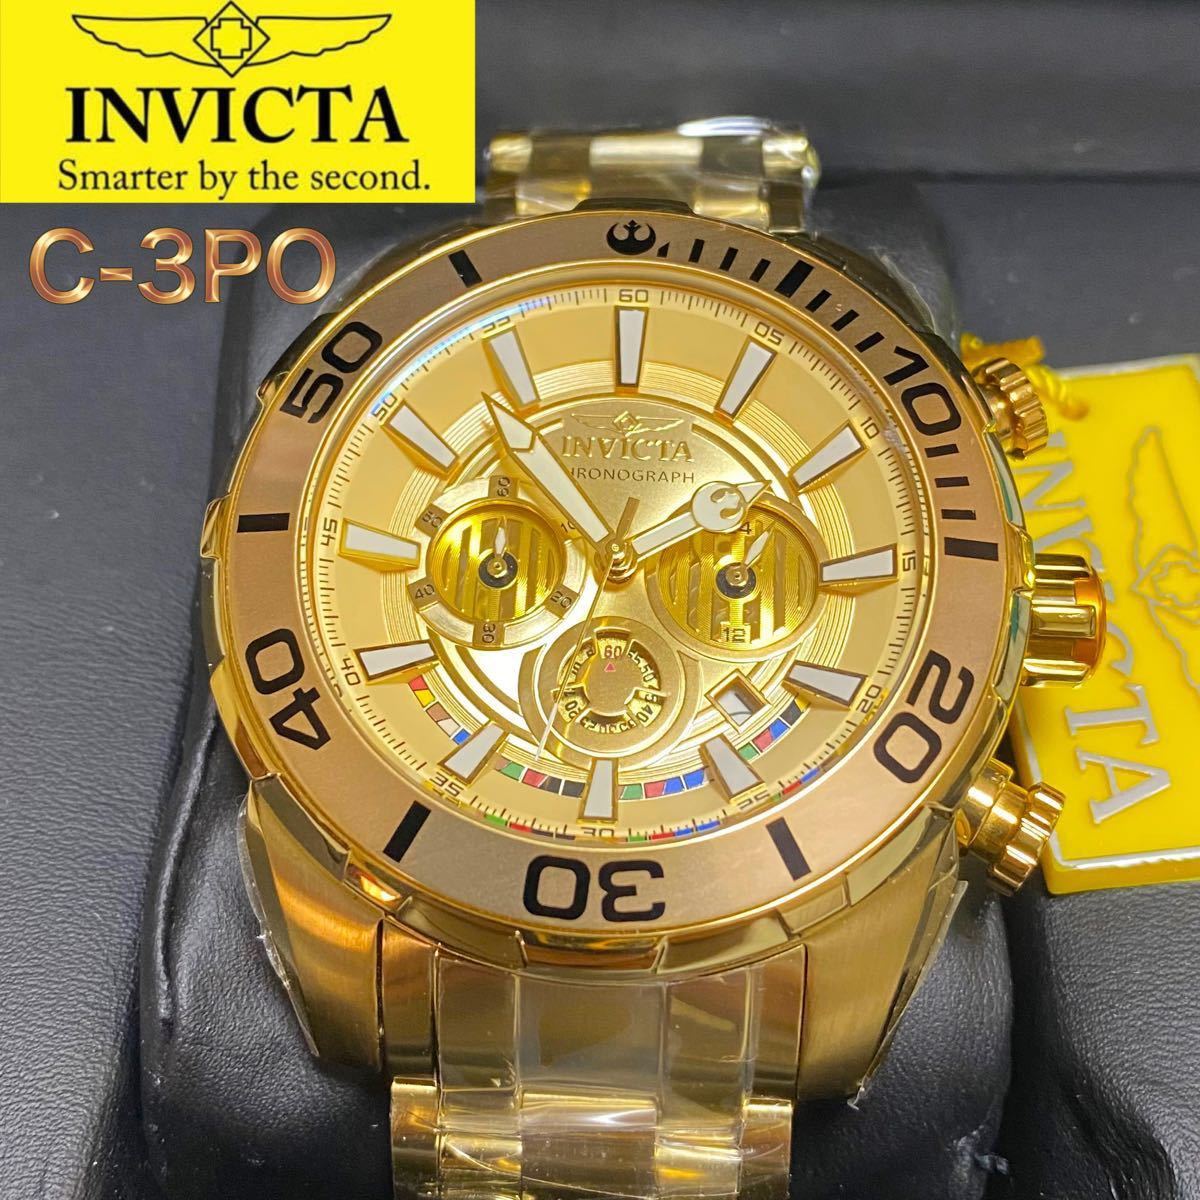 Invicta C-3PO インビクタ スターウォーズ 35068 クロノグラフ メンズ腕時計